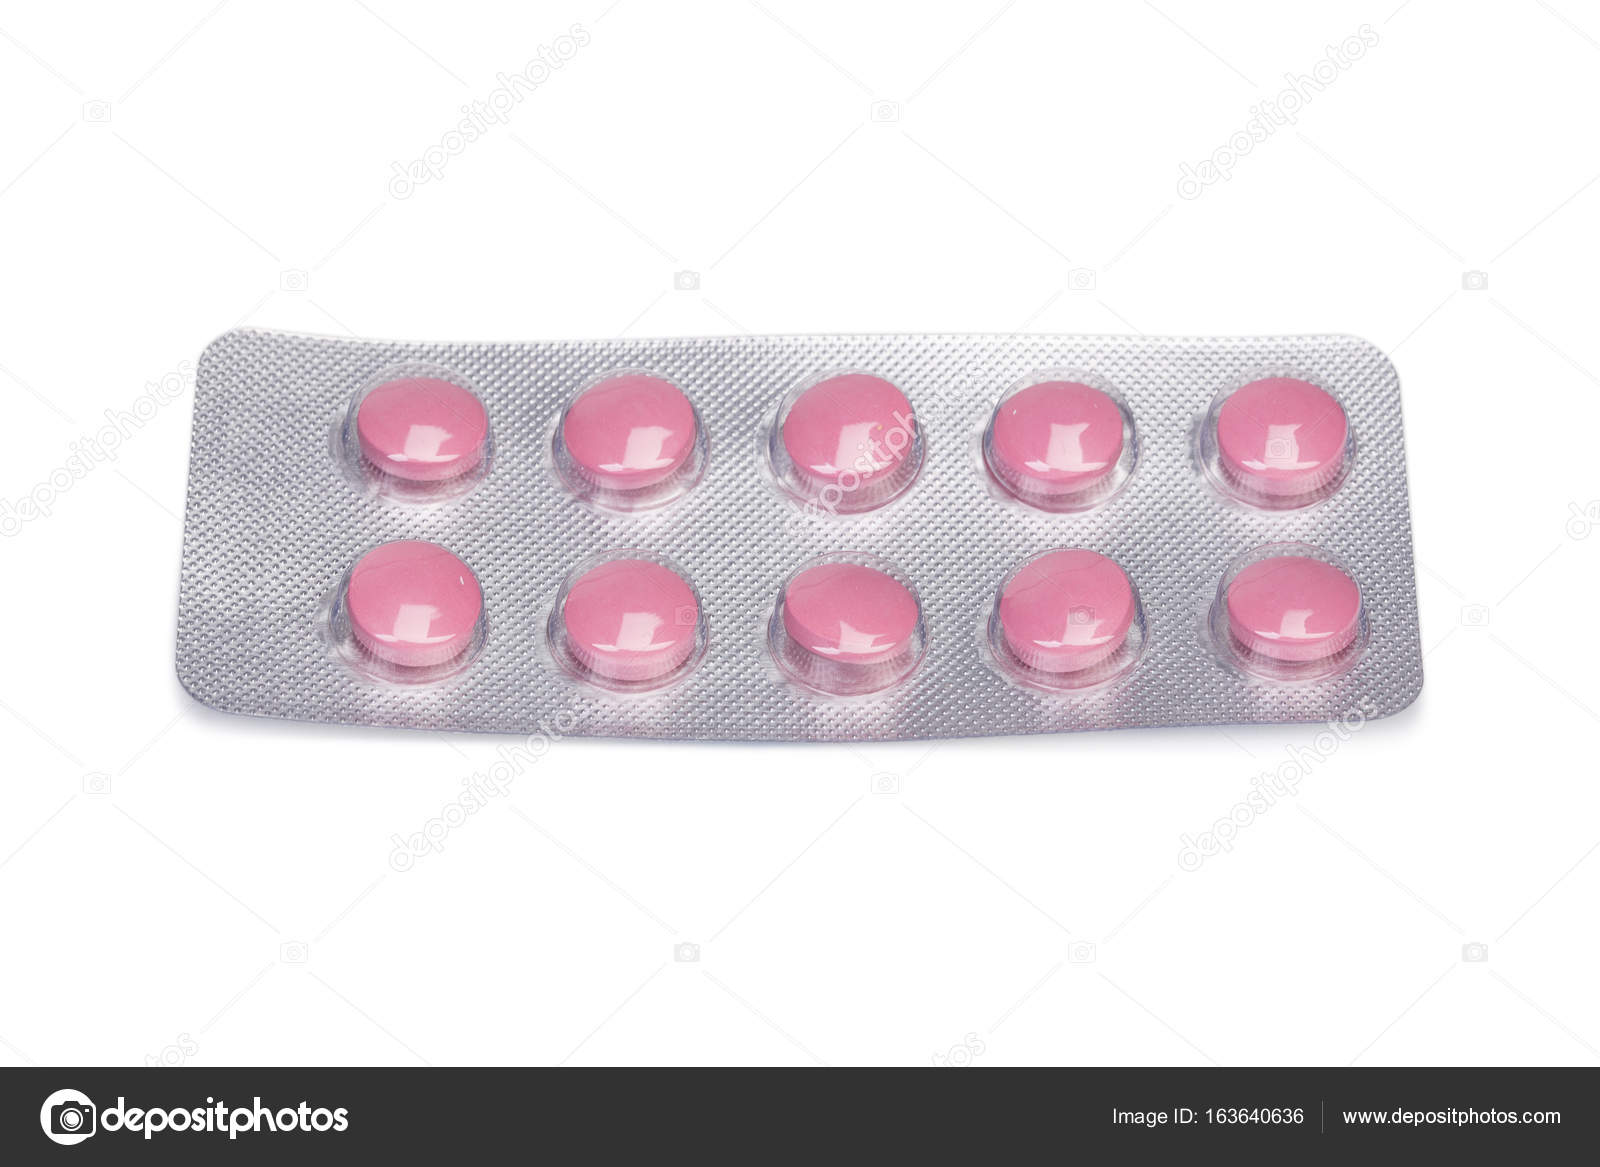 Розовые таблетки название. Аспирин Bayer розовая таблетка. Розовые круглые таблетки. Маленькие розовые таблетки. Розовые таблетки обезболивающие.